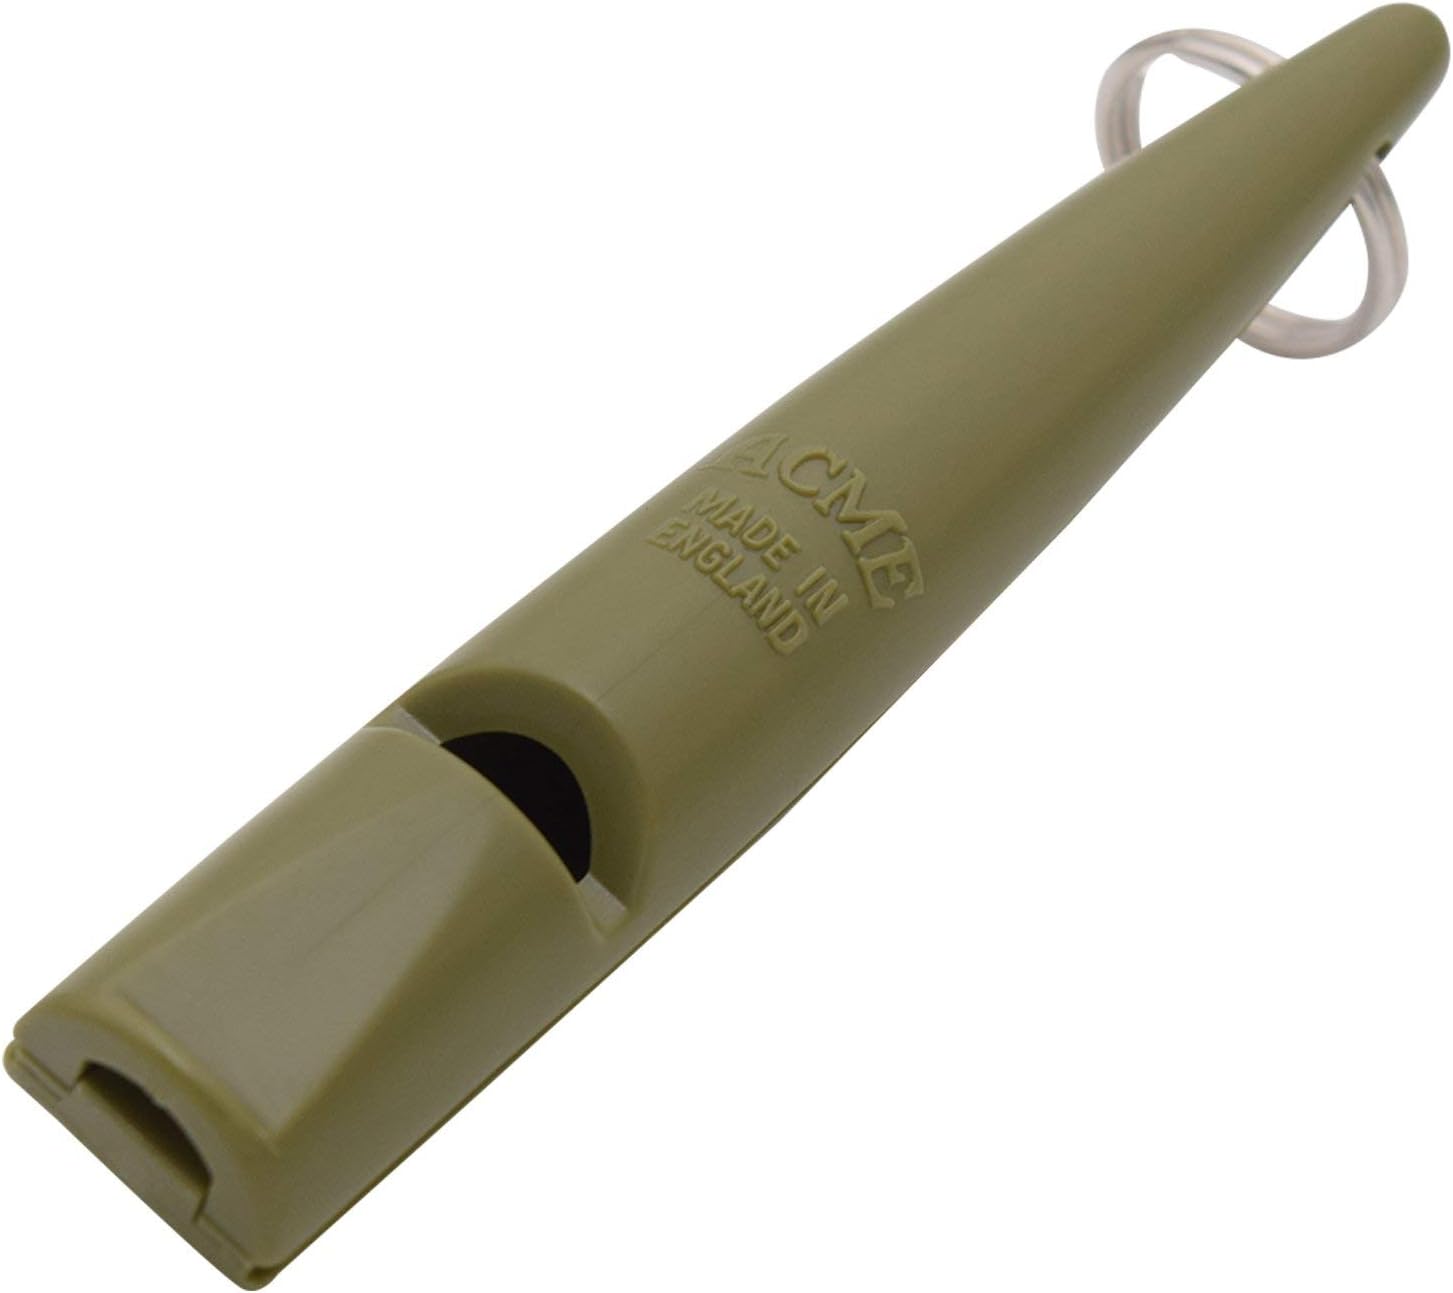 Acme 210.5 Dog Training Whistle